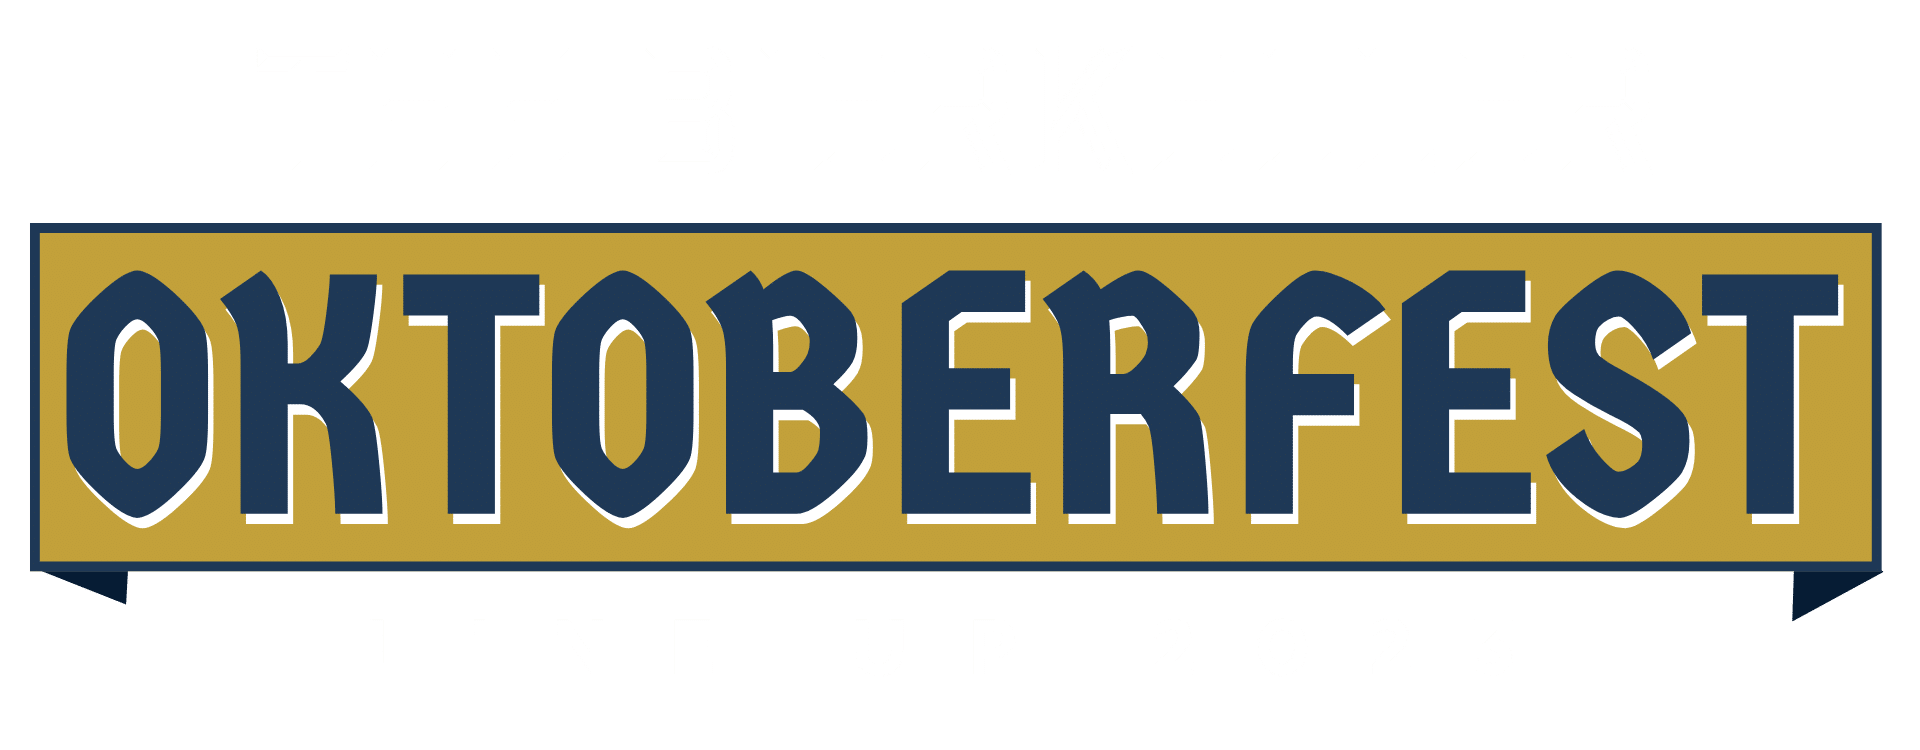 The Bierkeller Oktoberfest Line Up logo